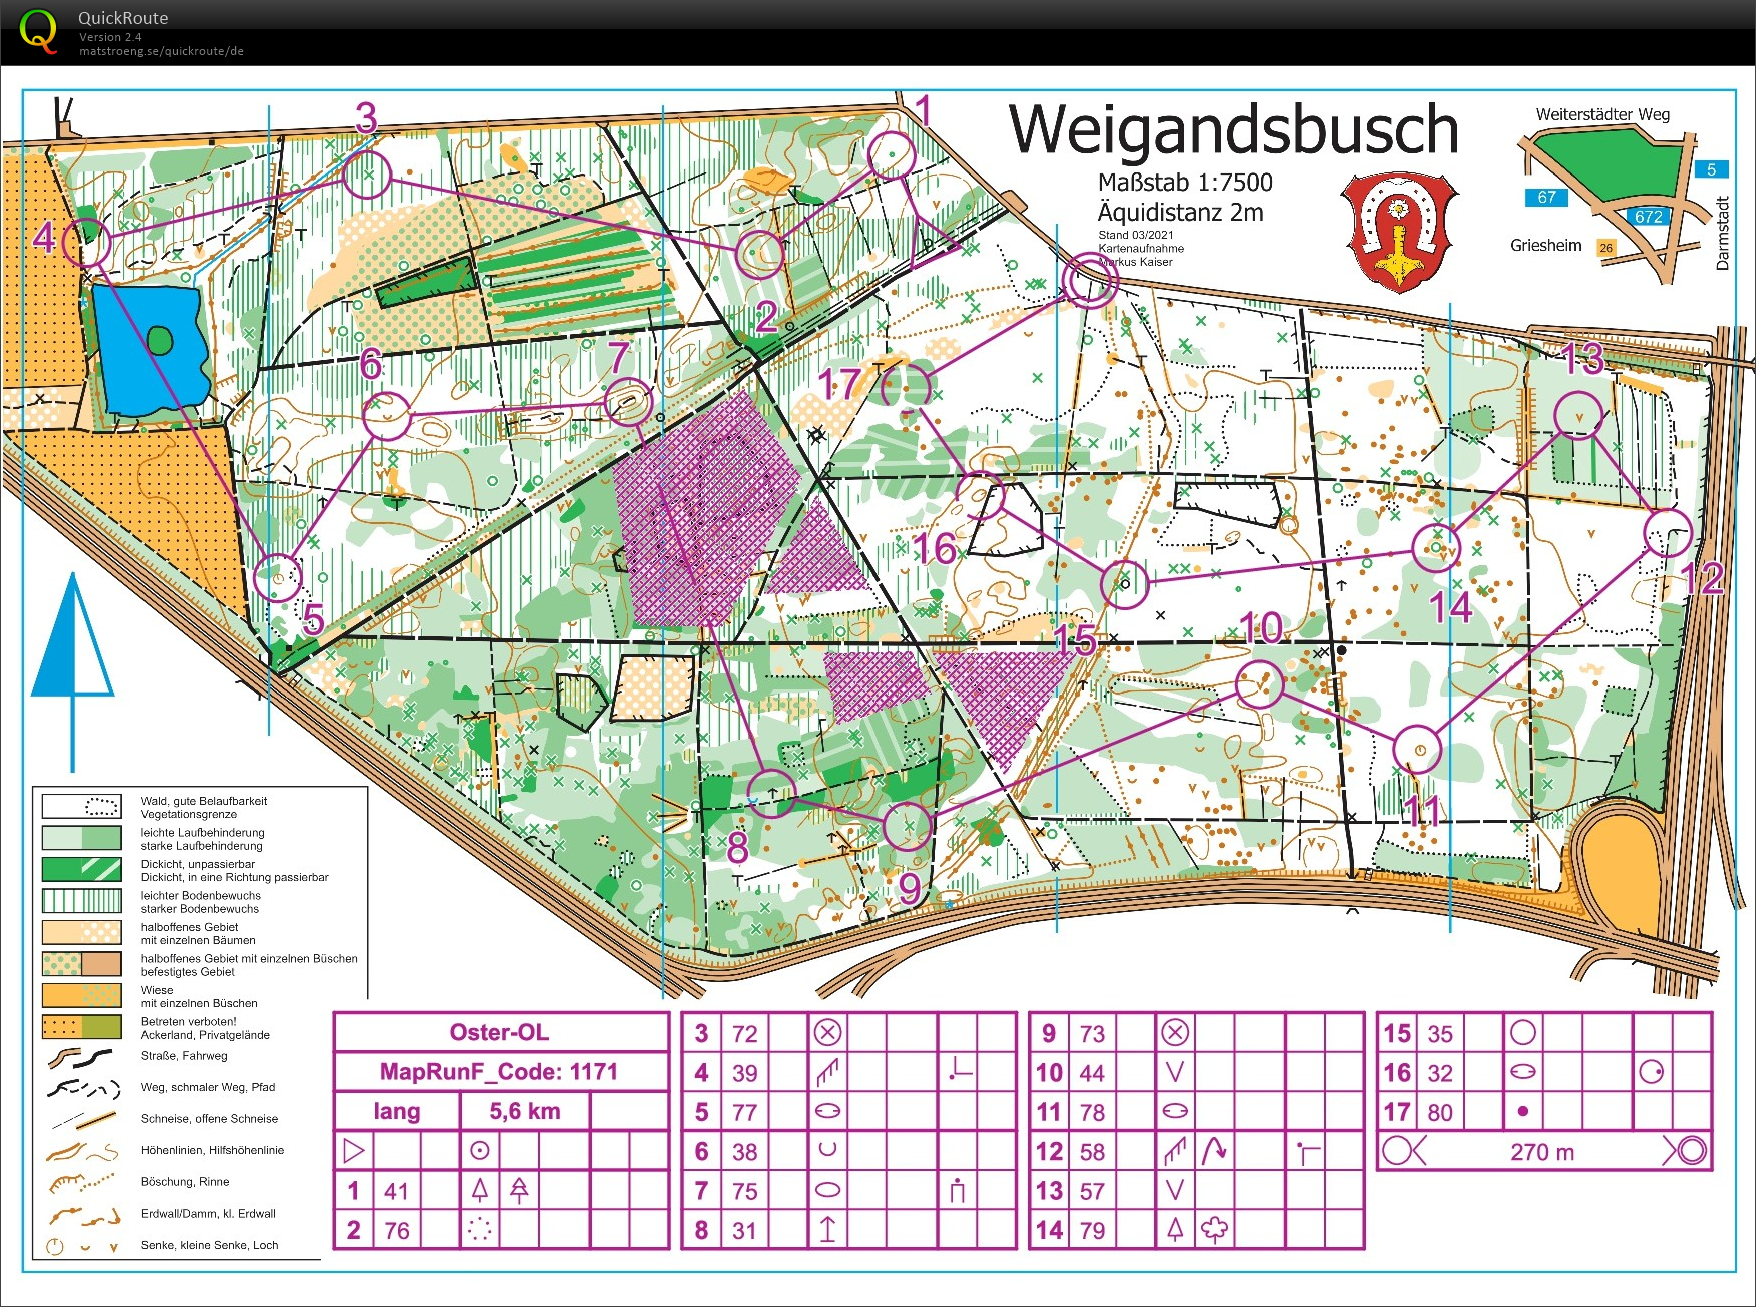 Training Weigandsbusch (09-05-2021)